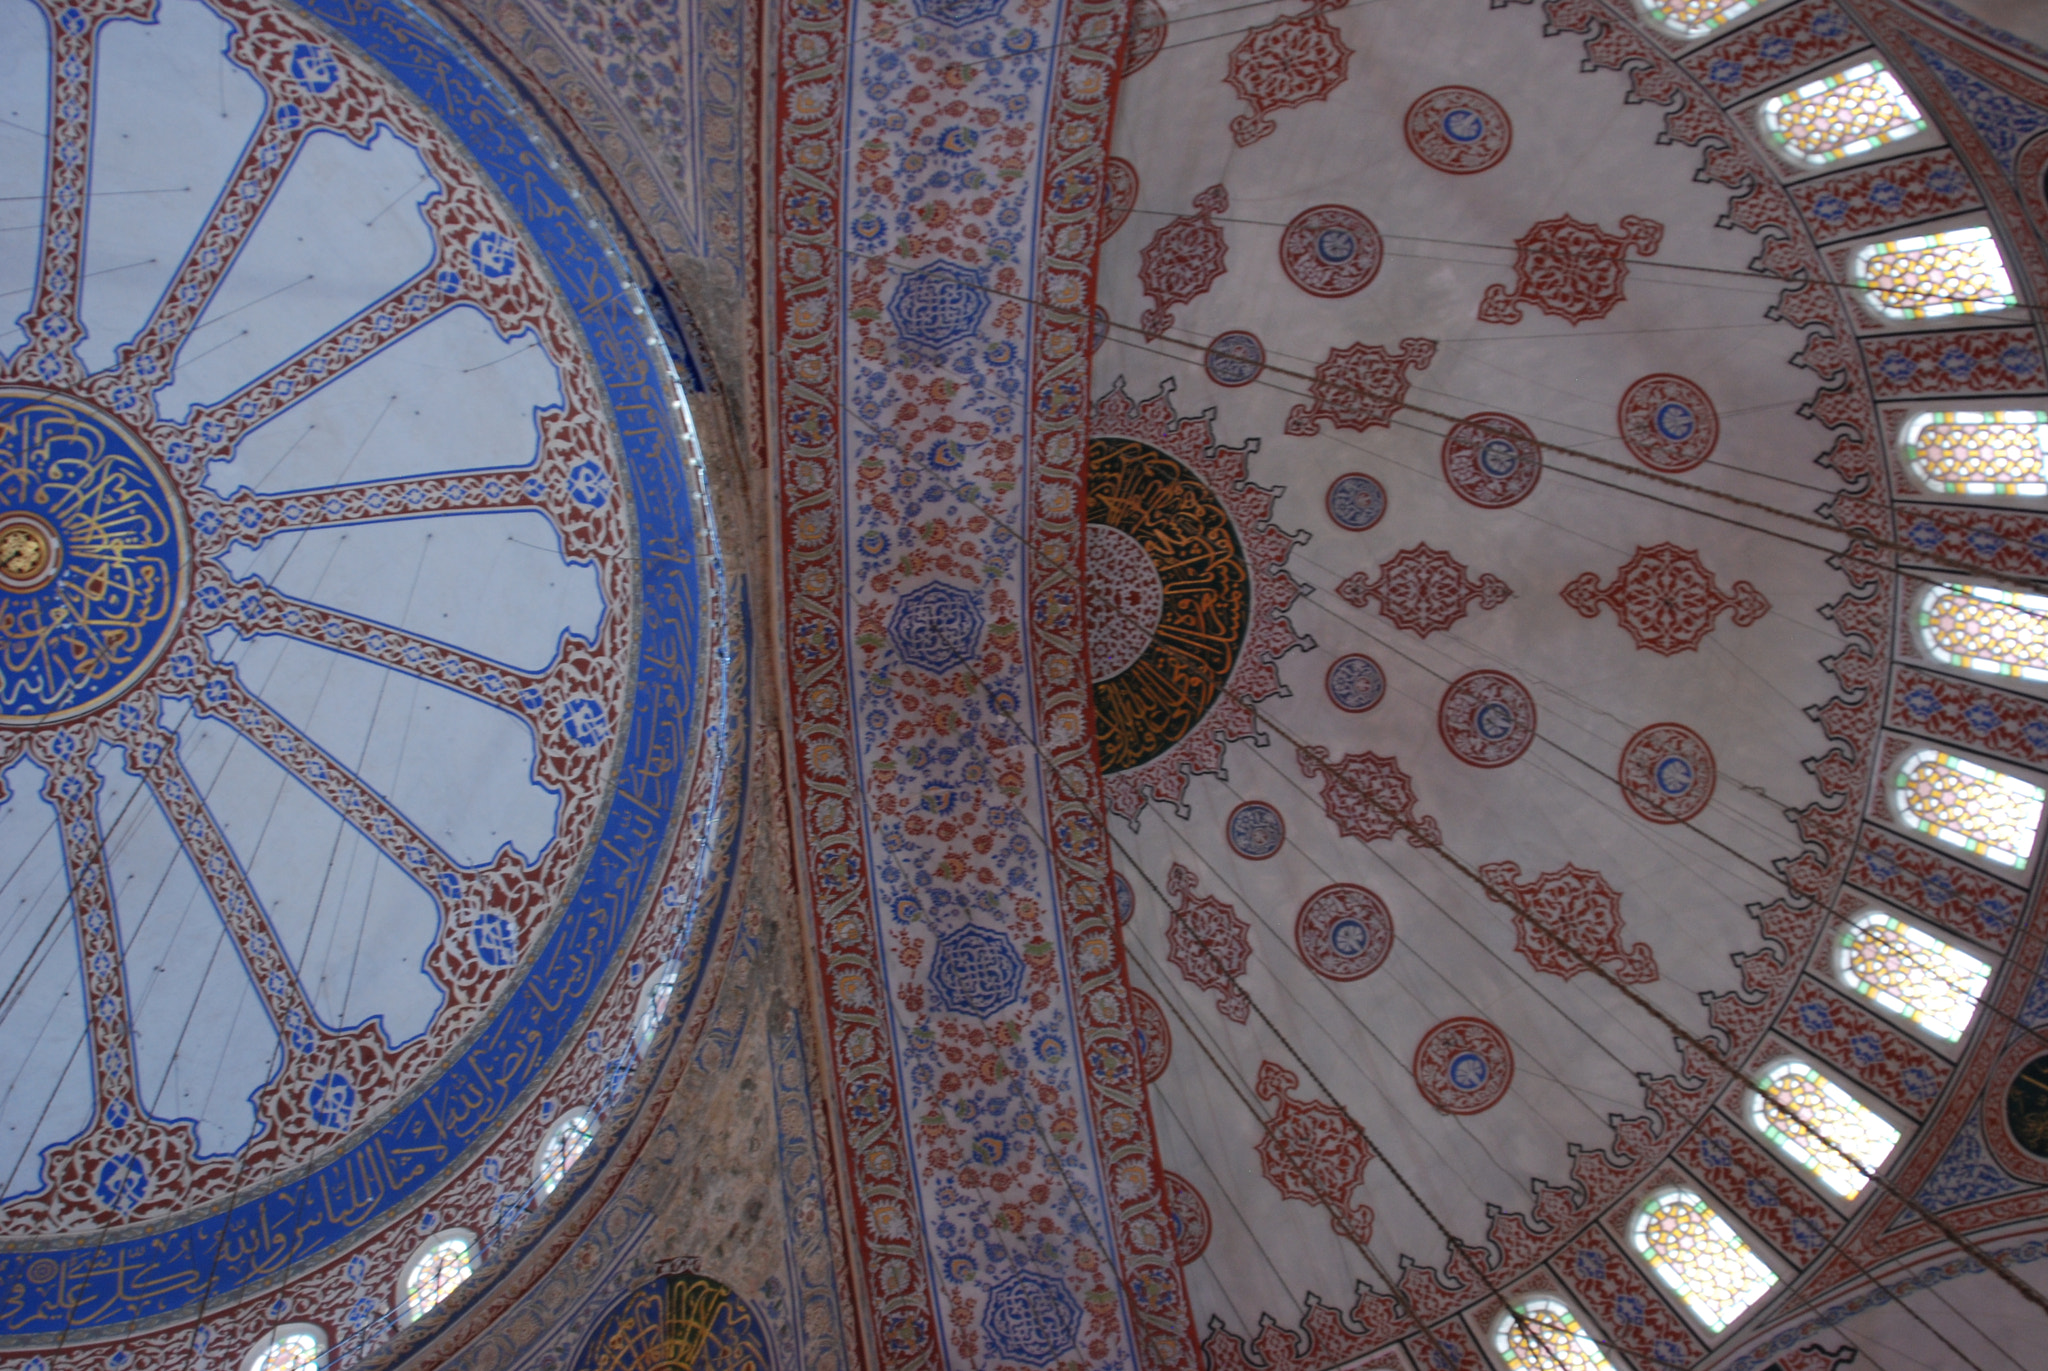 Nikon D80 sample photo. Blue mosque ceiling details photography